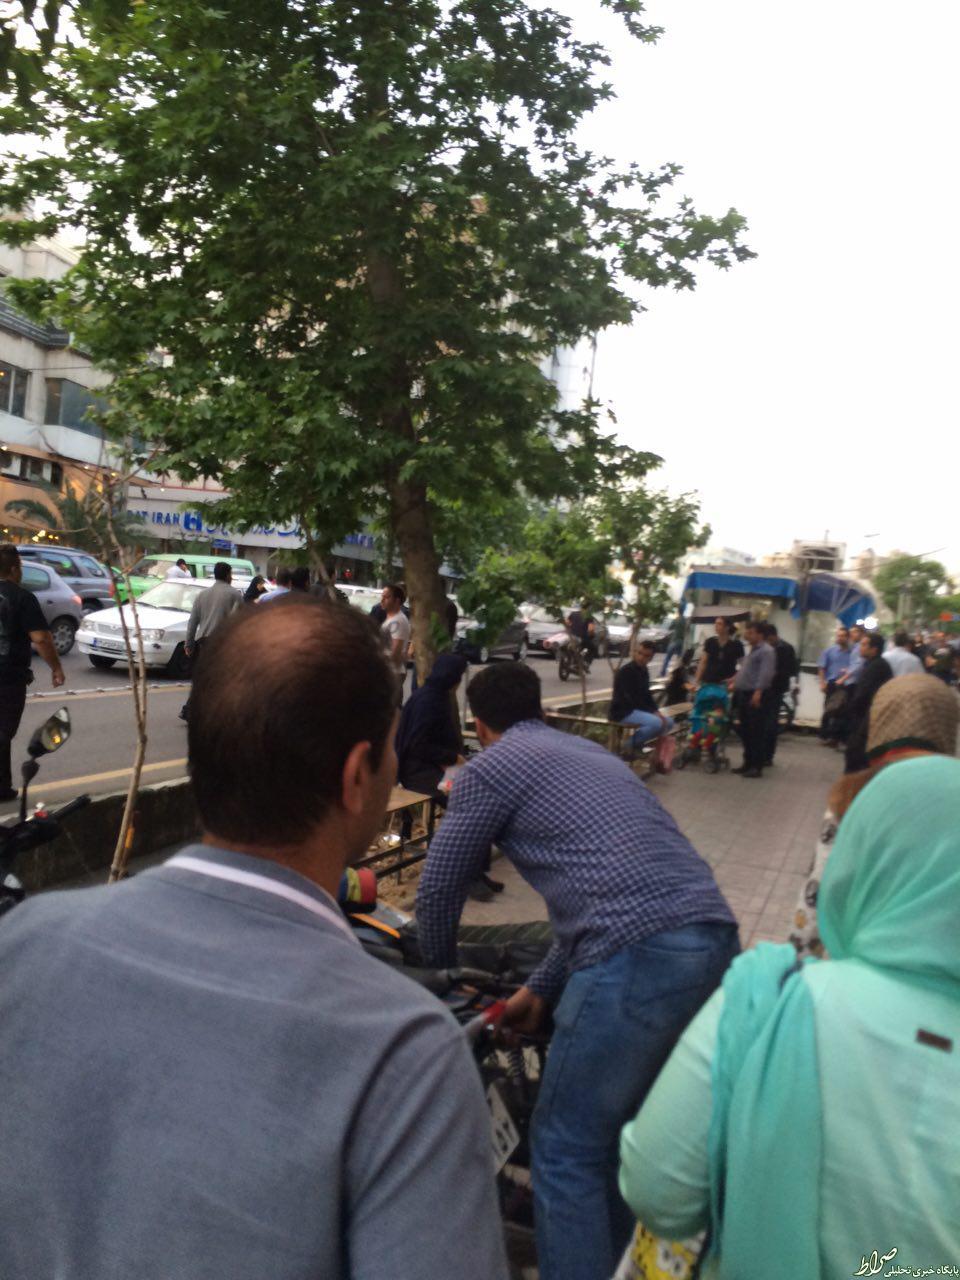 استفاده ماموران شهرداری از گاز فلفل در میدان 7 تیر/ یکی از ماموران گریخت +تصاویر